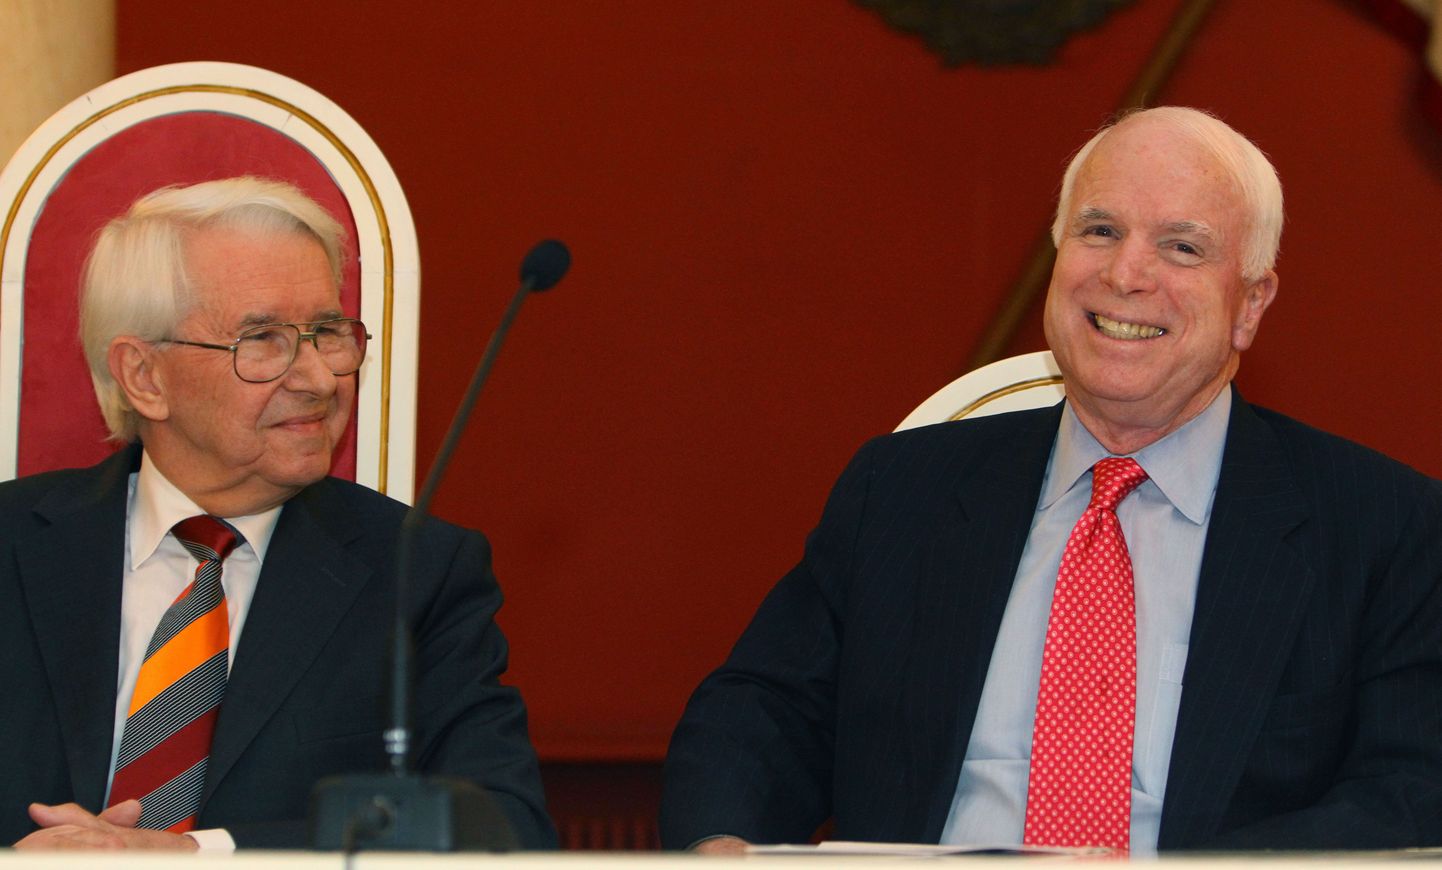 Benedictas Juodka (vasakul) kohtus möödunud aastal senaator John McCainiga(paremal).